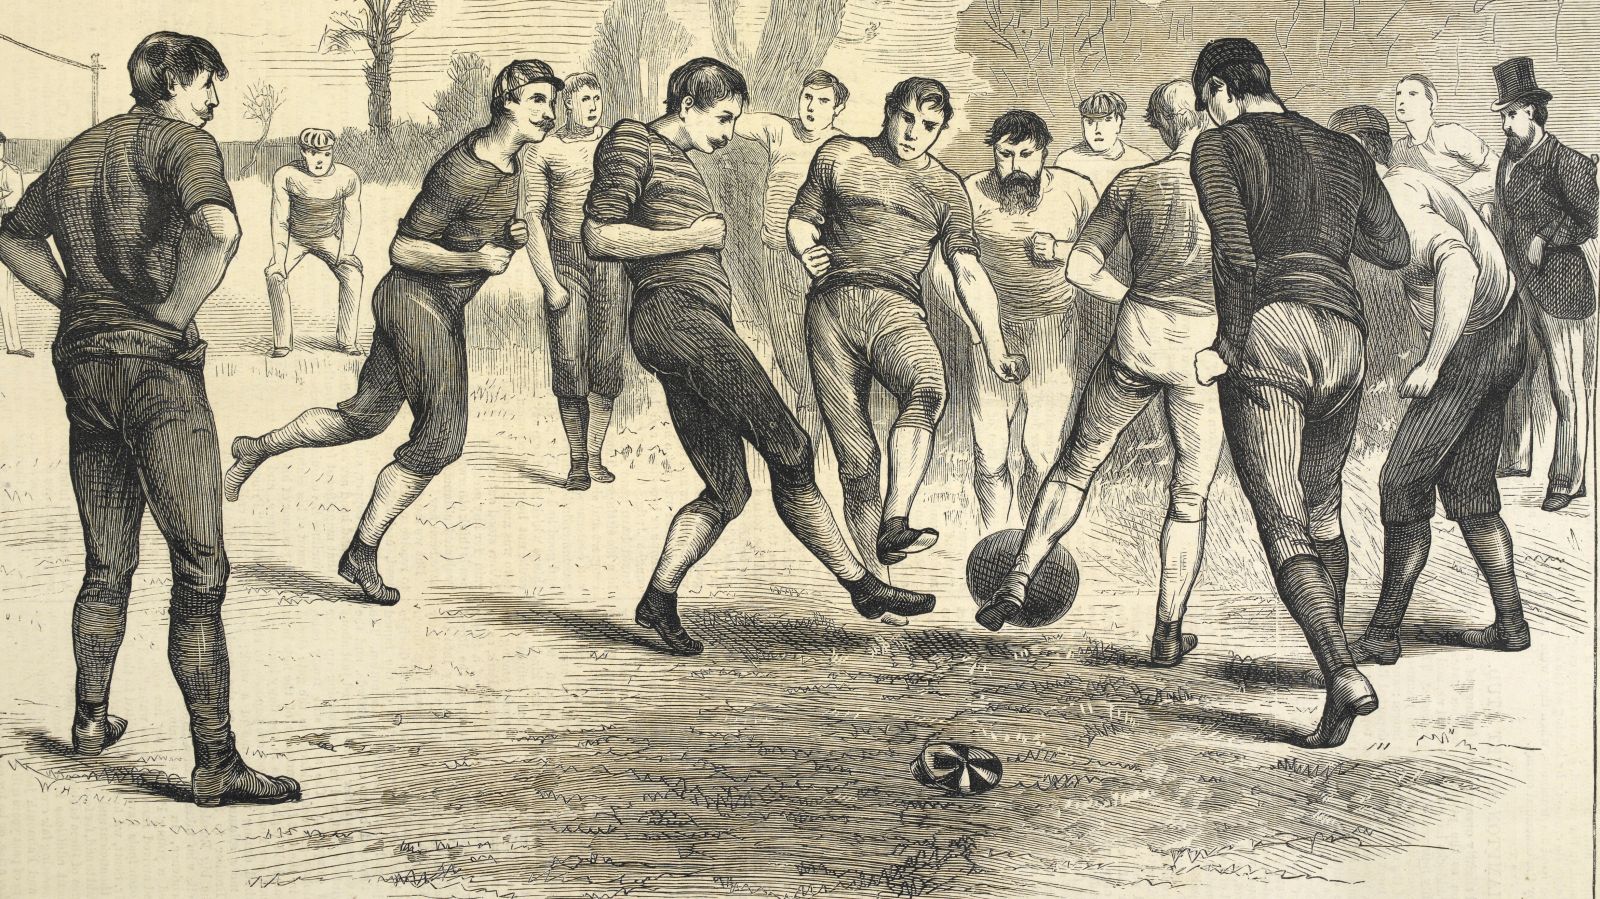 Возникновения игры футбол. Футбол в Англии 19 век. Регби Англия 19 век. 1863 Год в Англии футбол. История возникновения футбола.